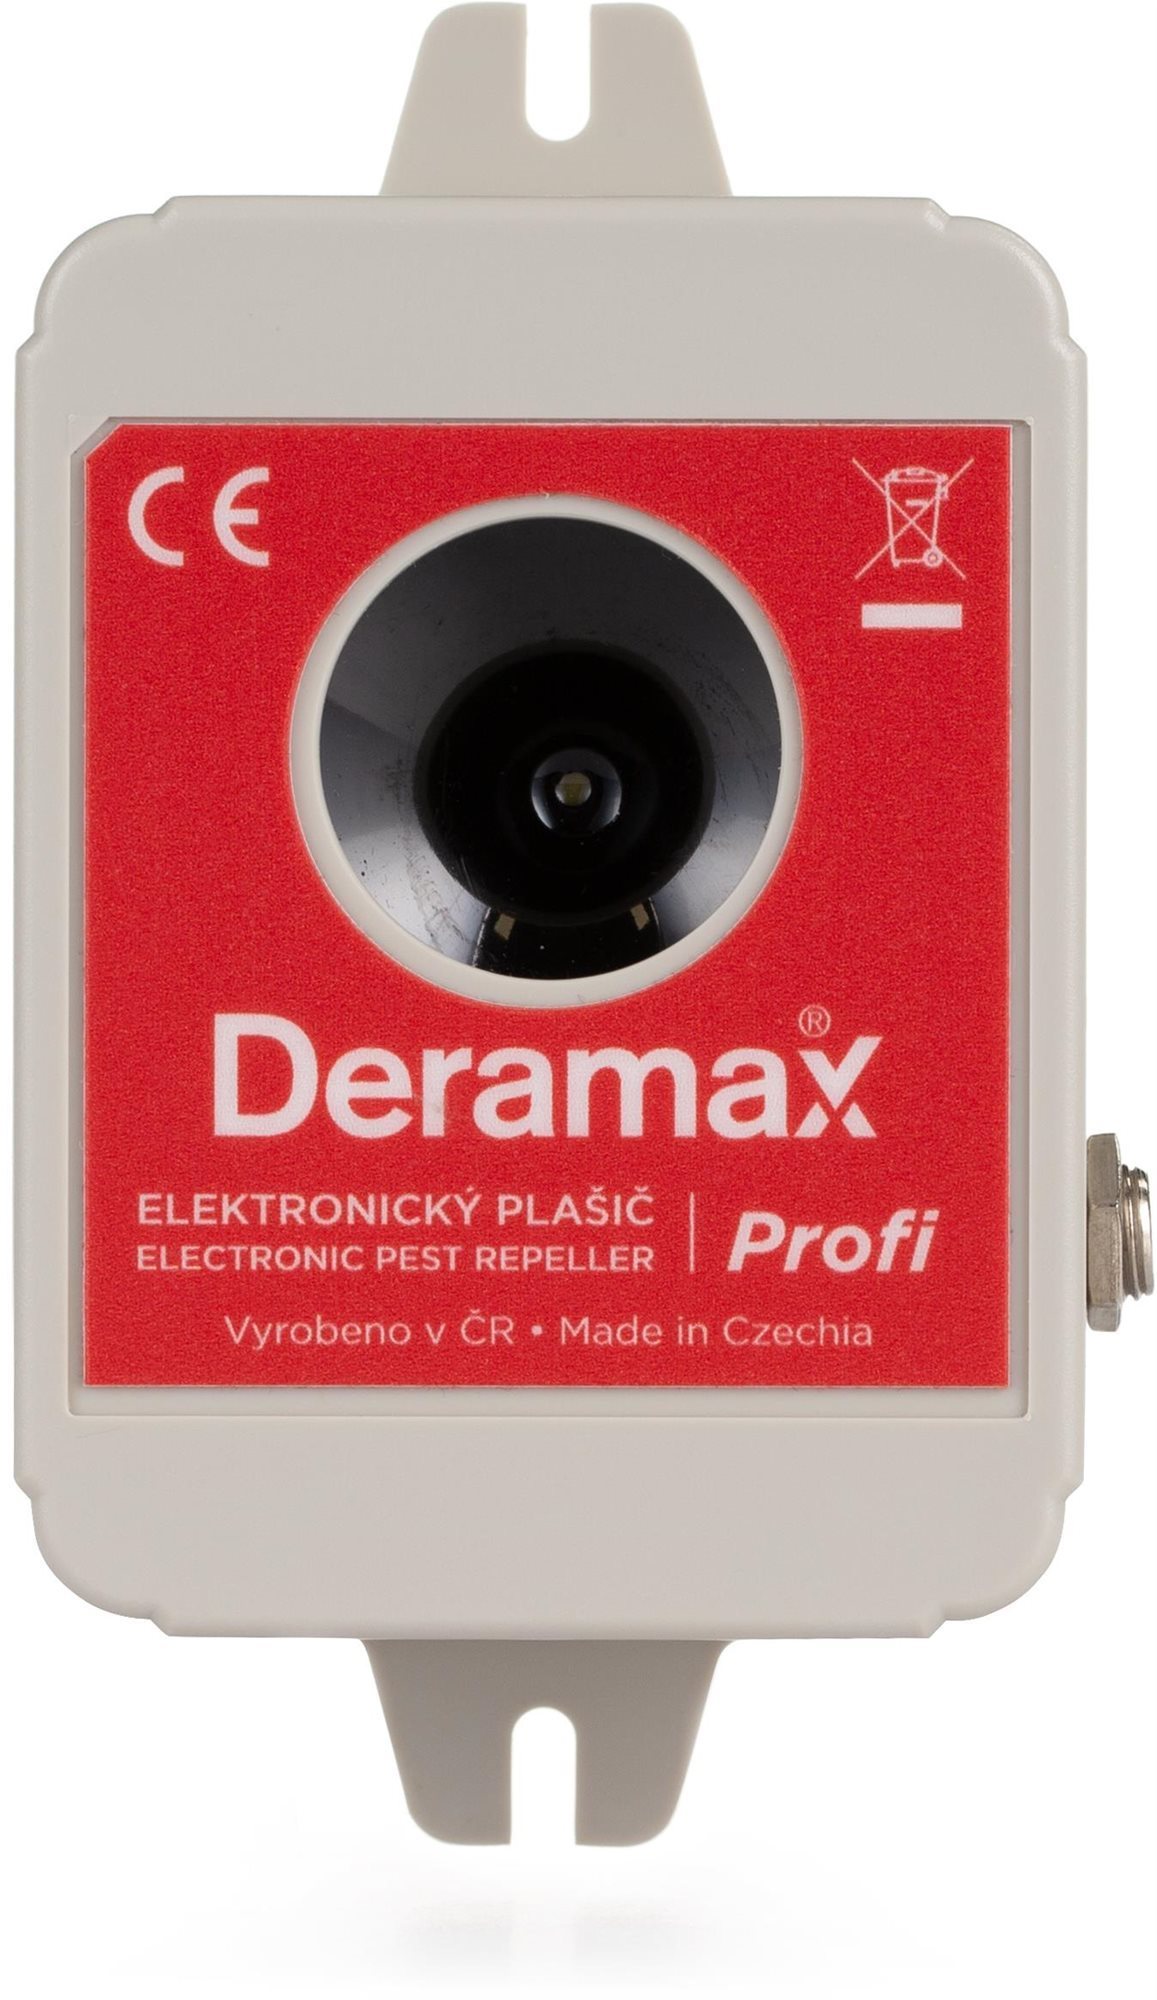 Deramax-Profi Ultrahangos nyest- és rágcsálóriasztó